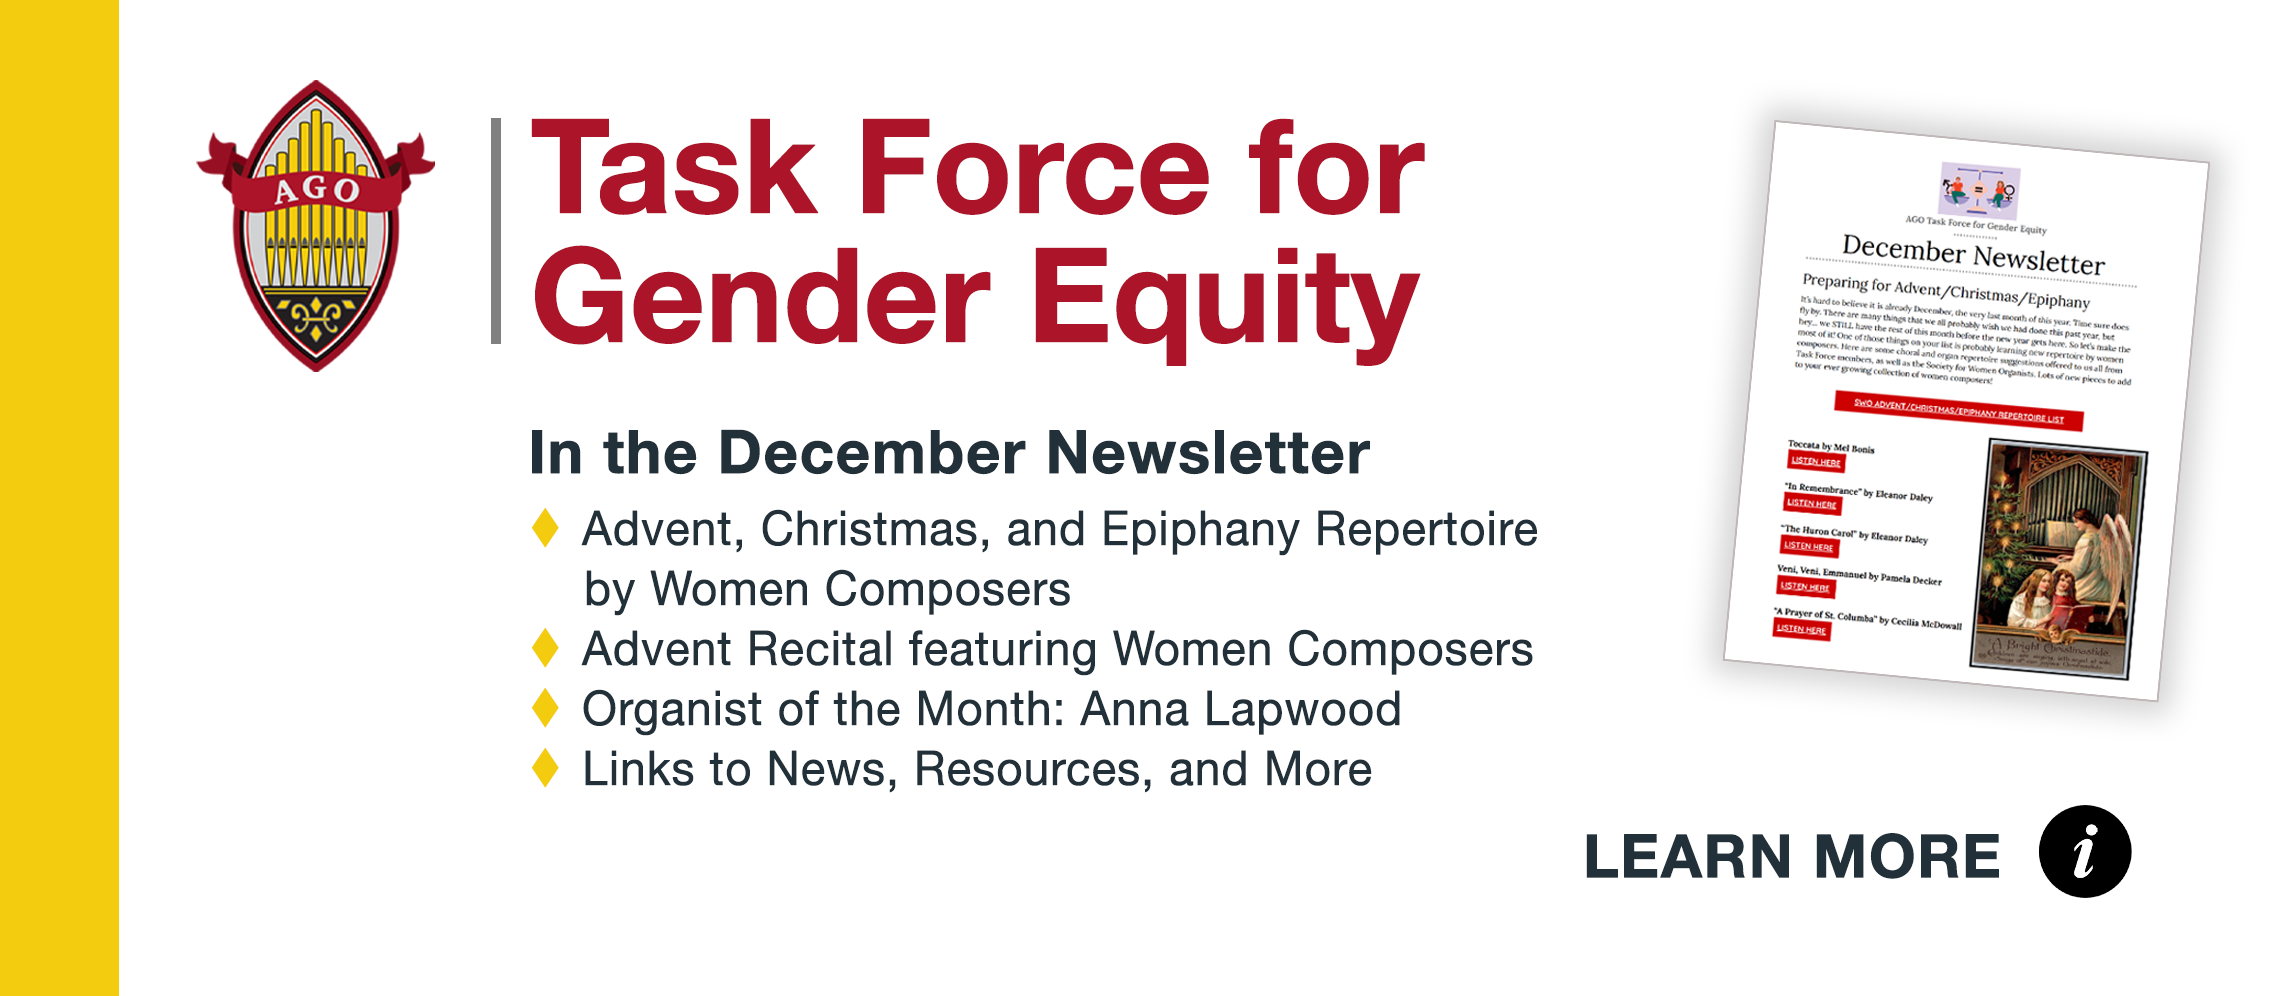 Task Force for Gender Equity